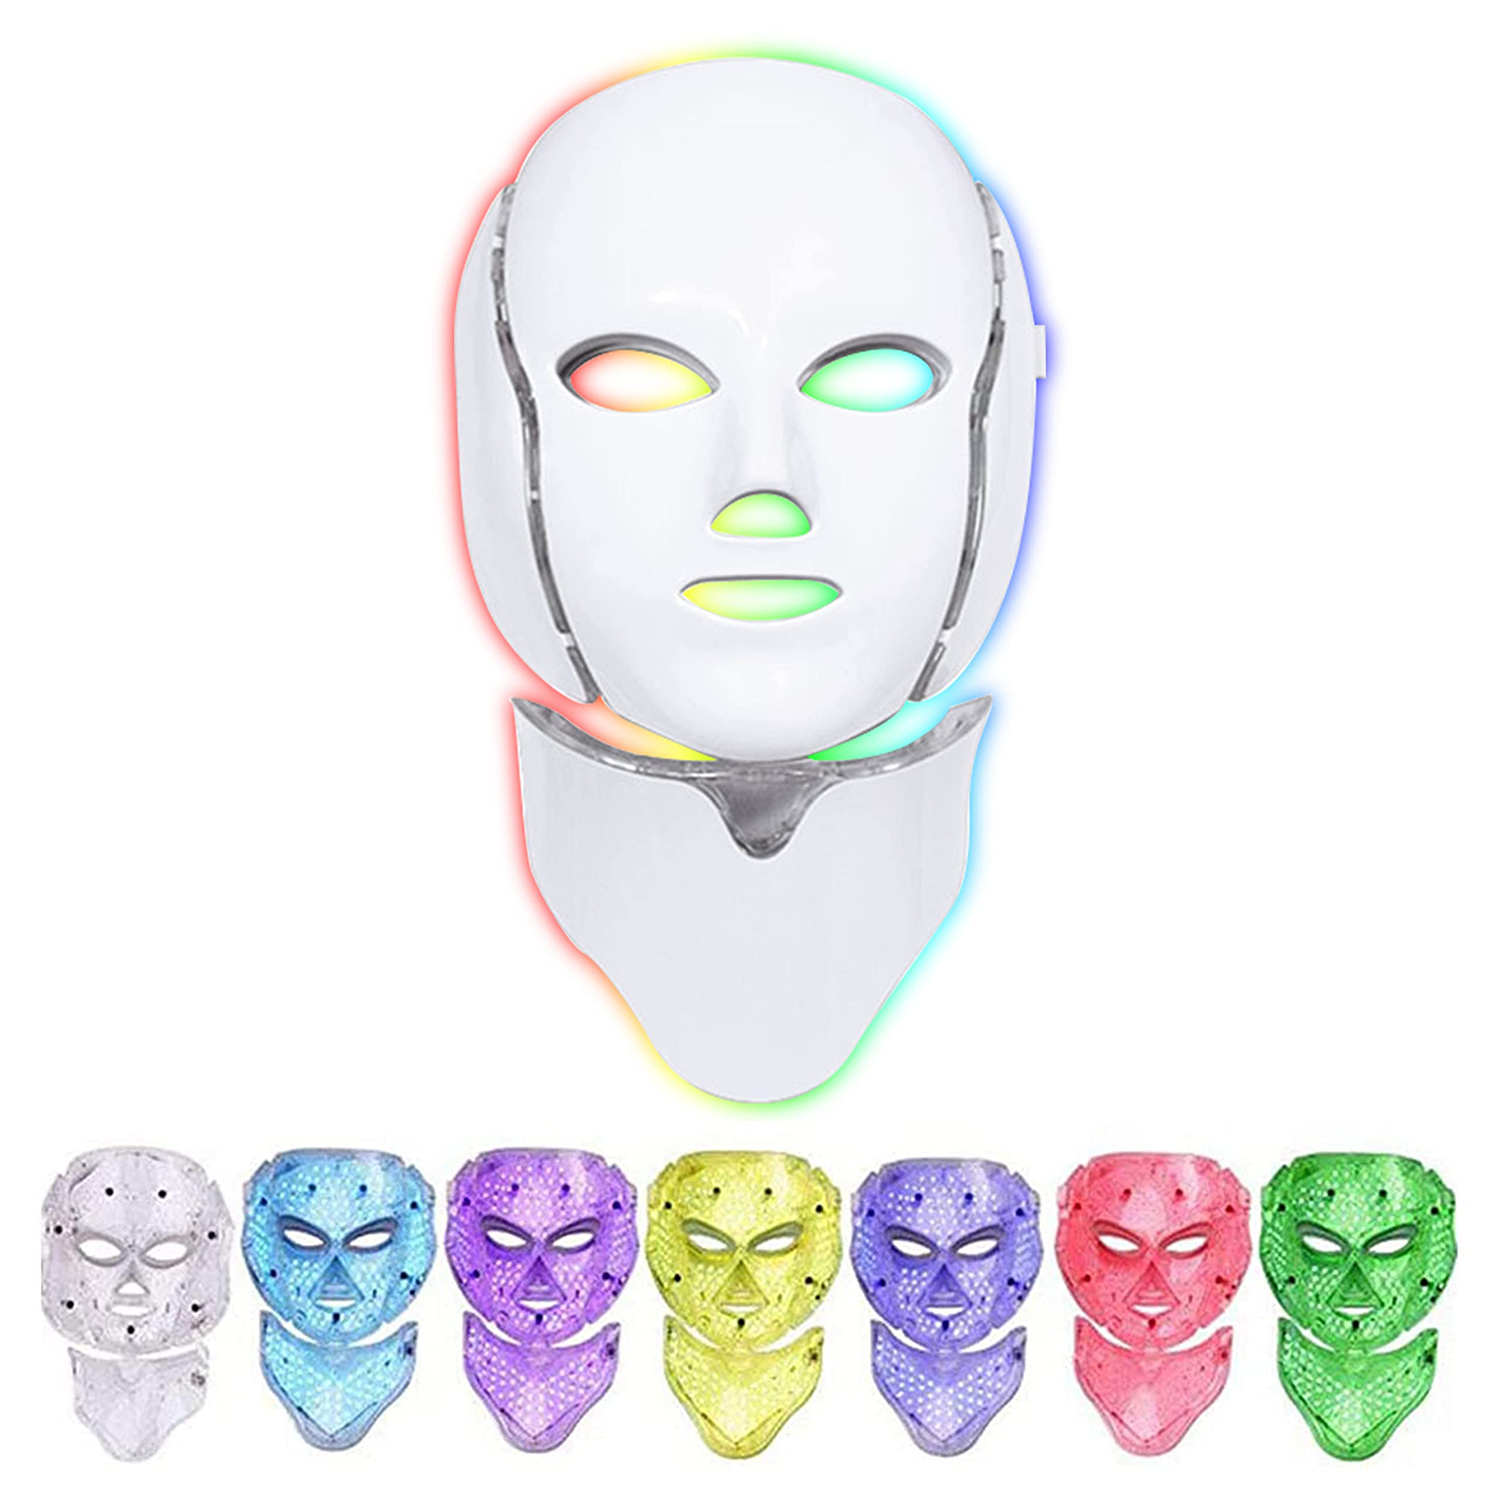 7 color led face mask